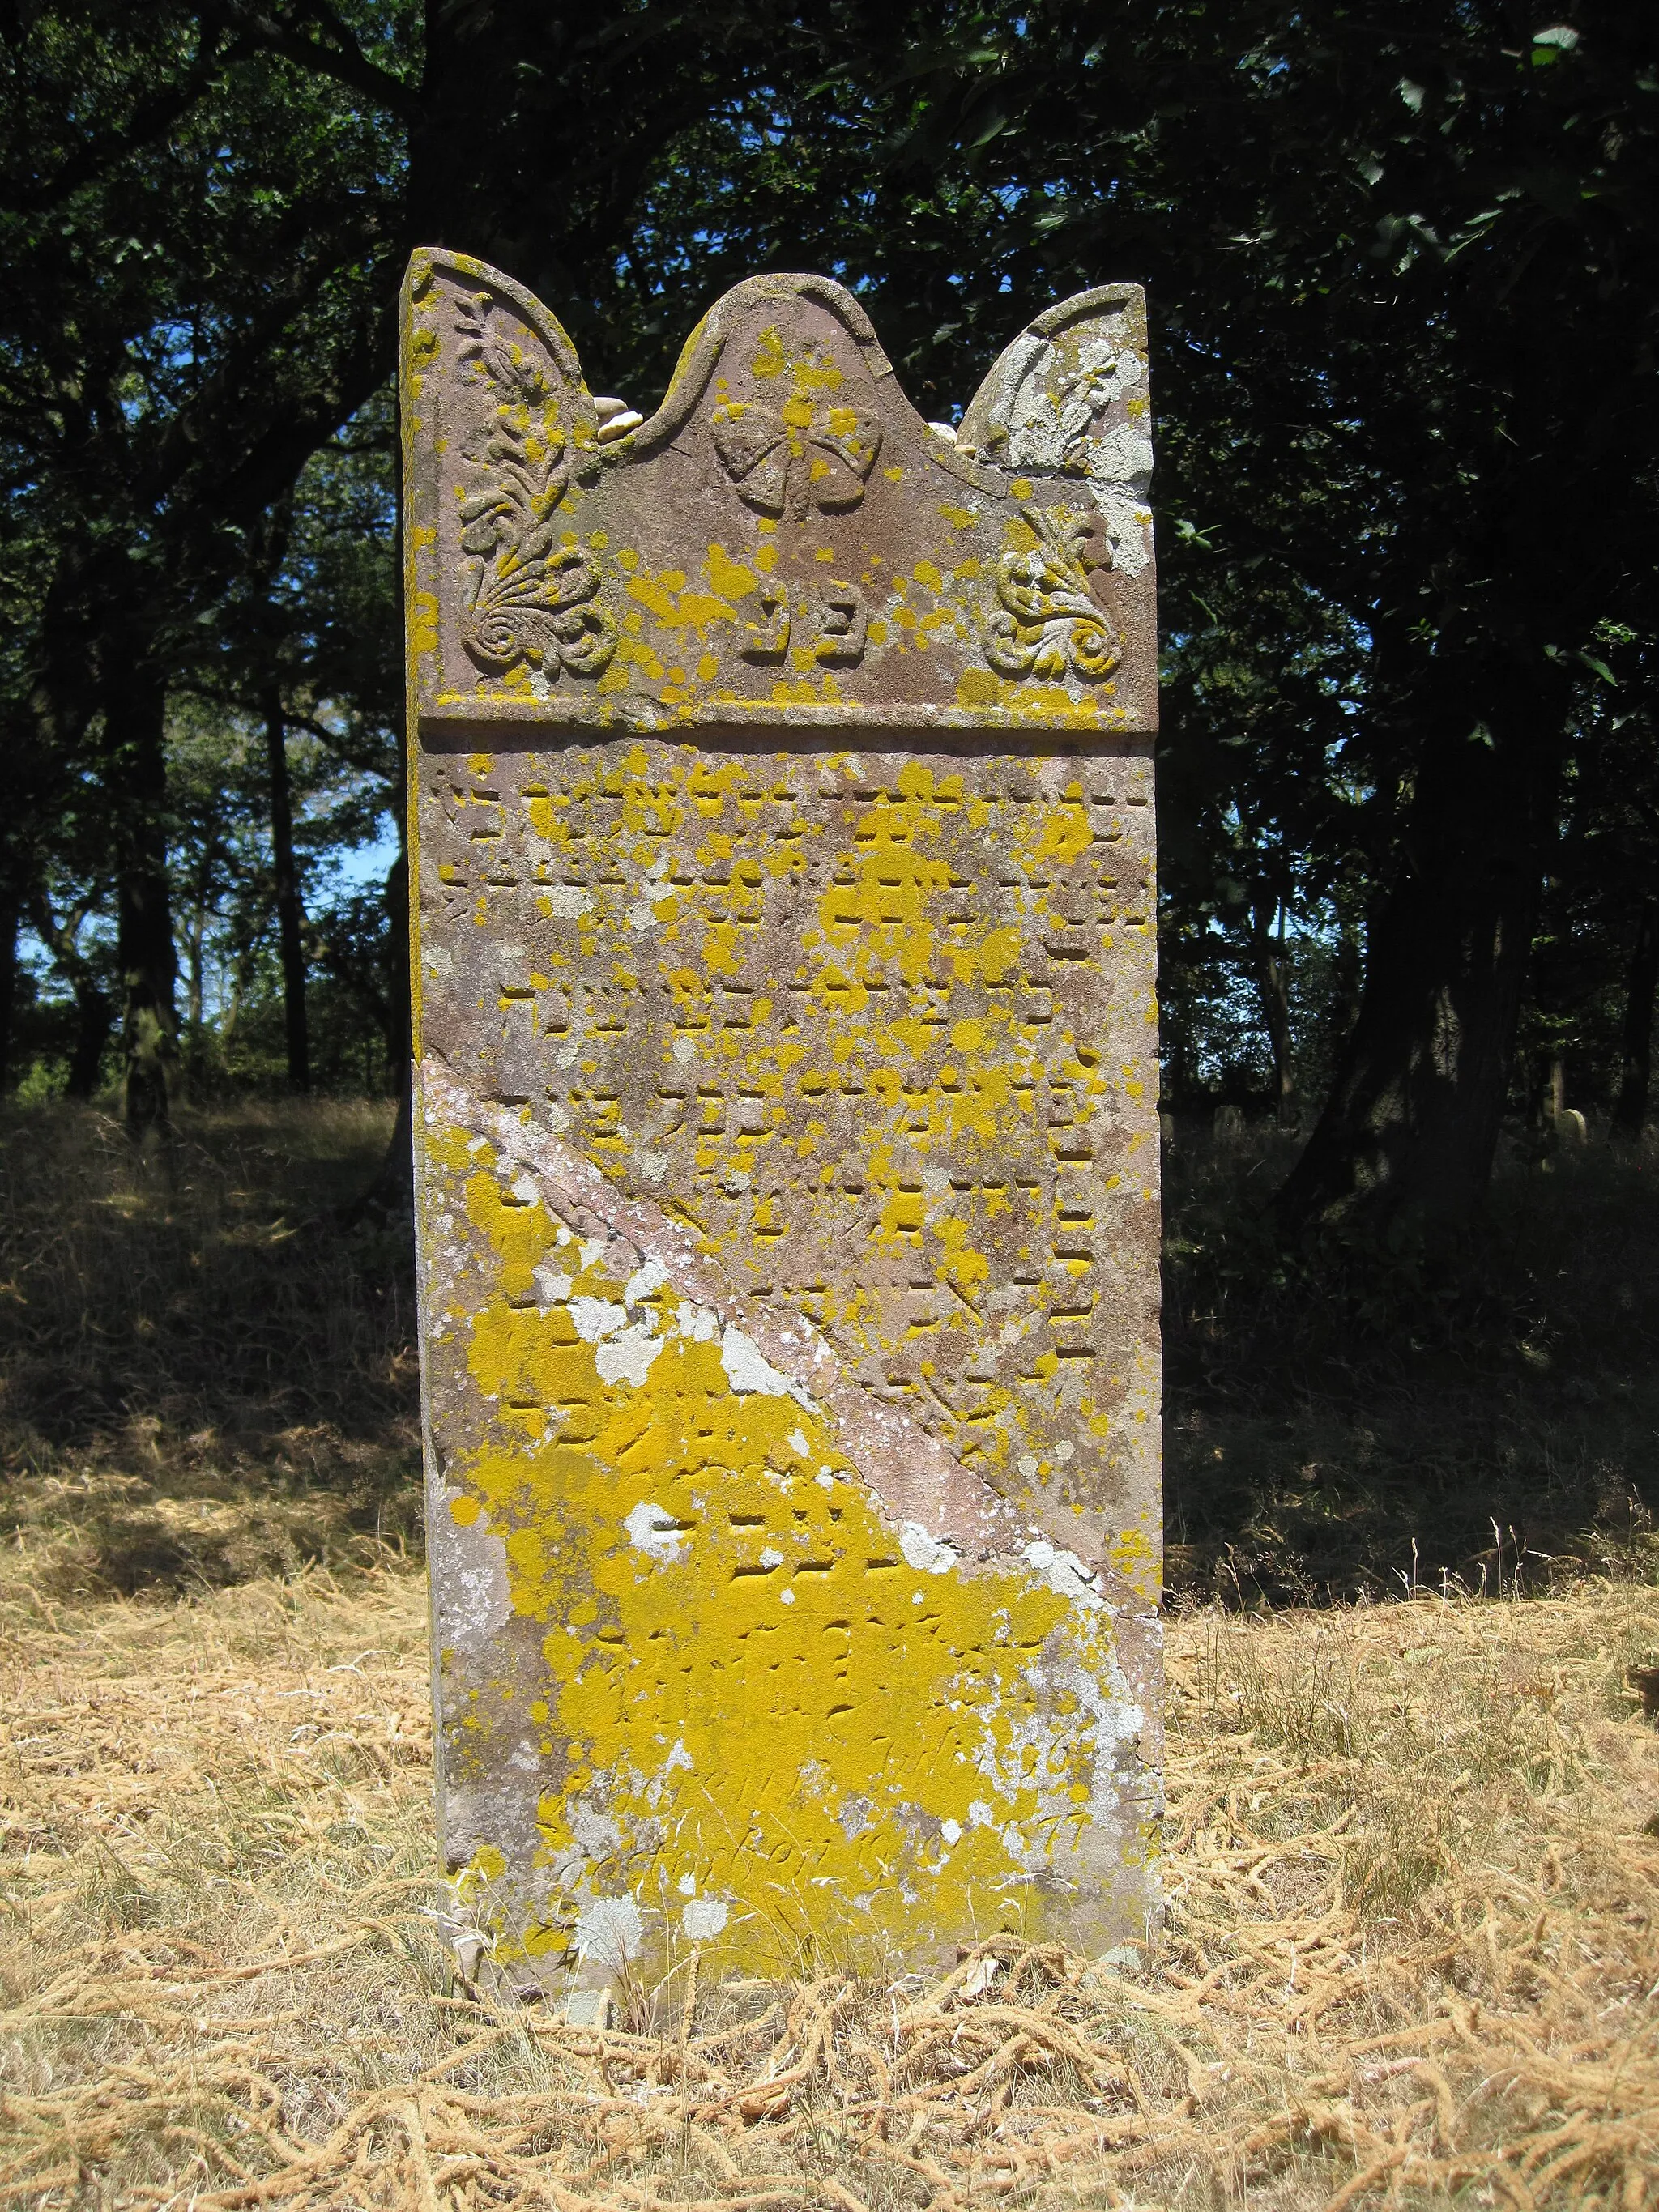 Photo showing: Jüdischer Friedhof in Xanten